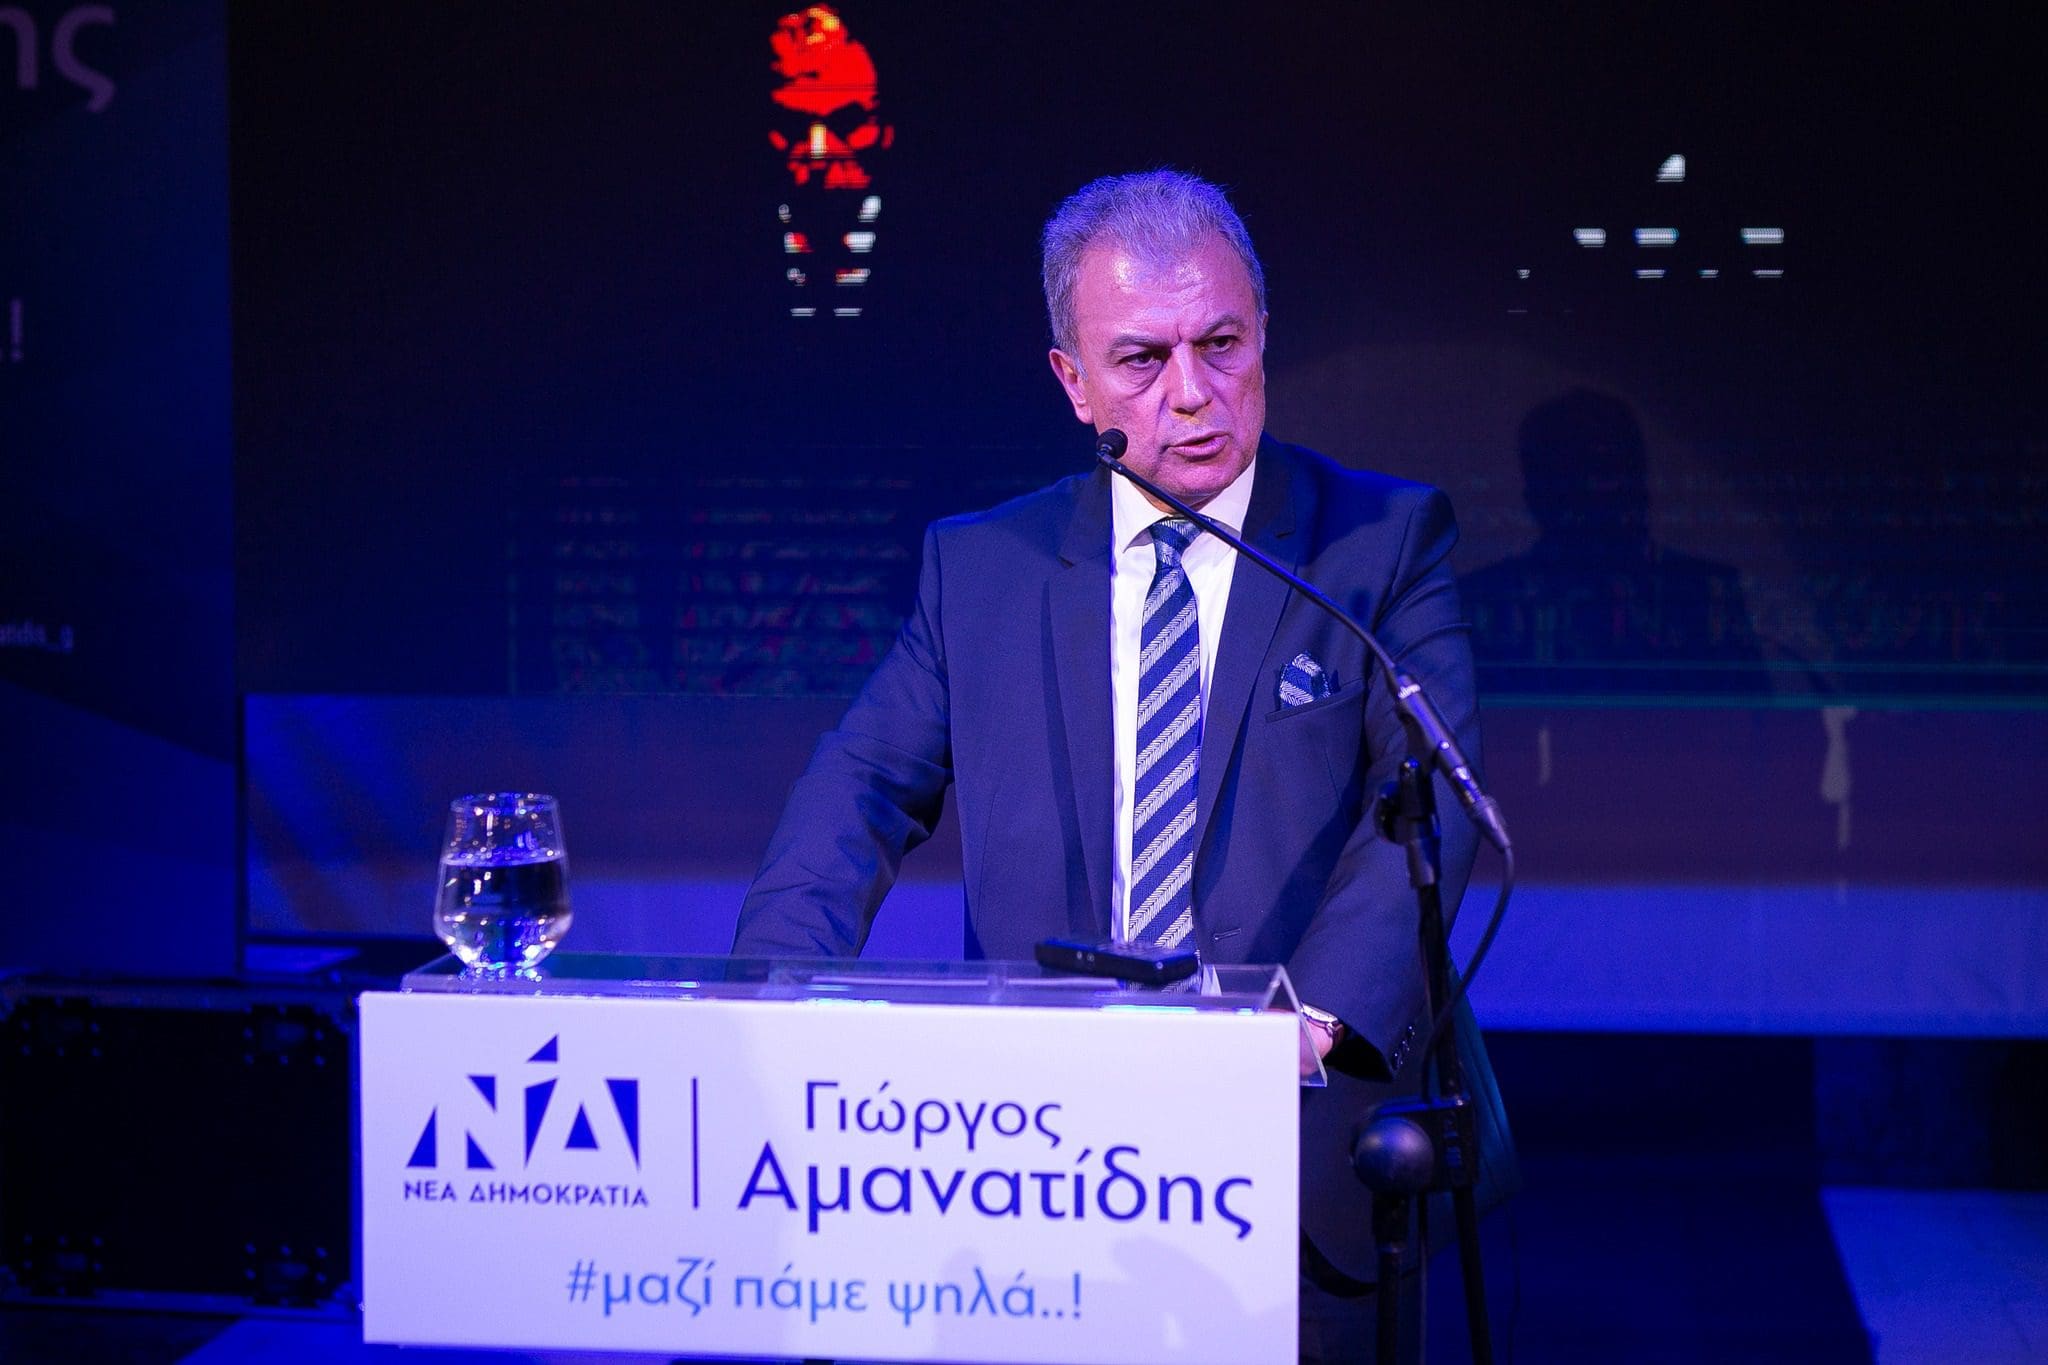 Γ. Αμανατίδης: Δεν ήμουν απλά παρών. Έδινα λύσεις στα προβλήματα και άνοιγα προοπτικές. ( ολόκληρη η ομιλία του βουλευτή Κοζάνης - και βίντεο από την εκδήλωση)